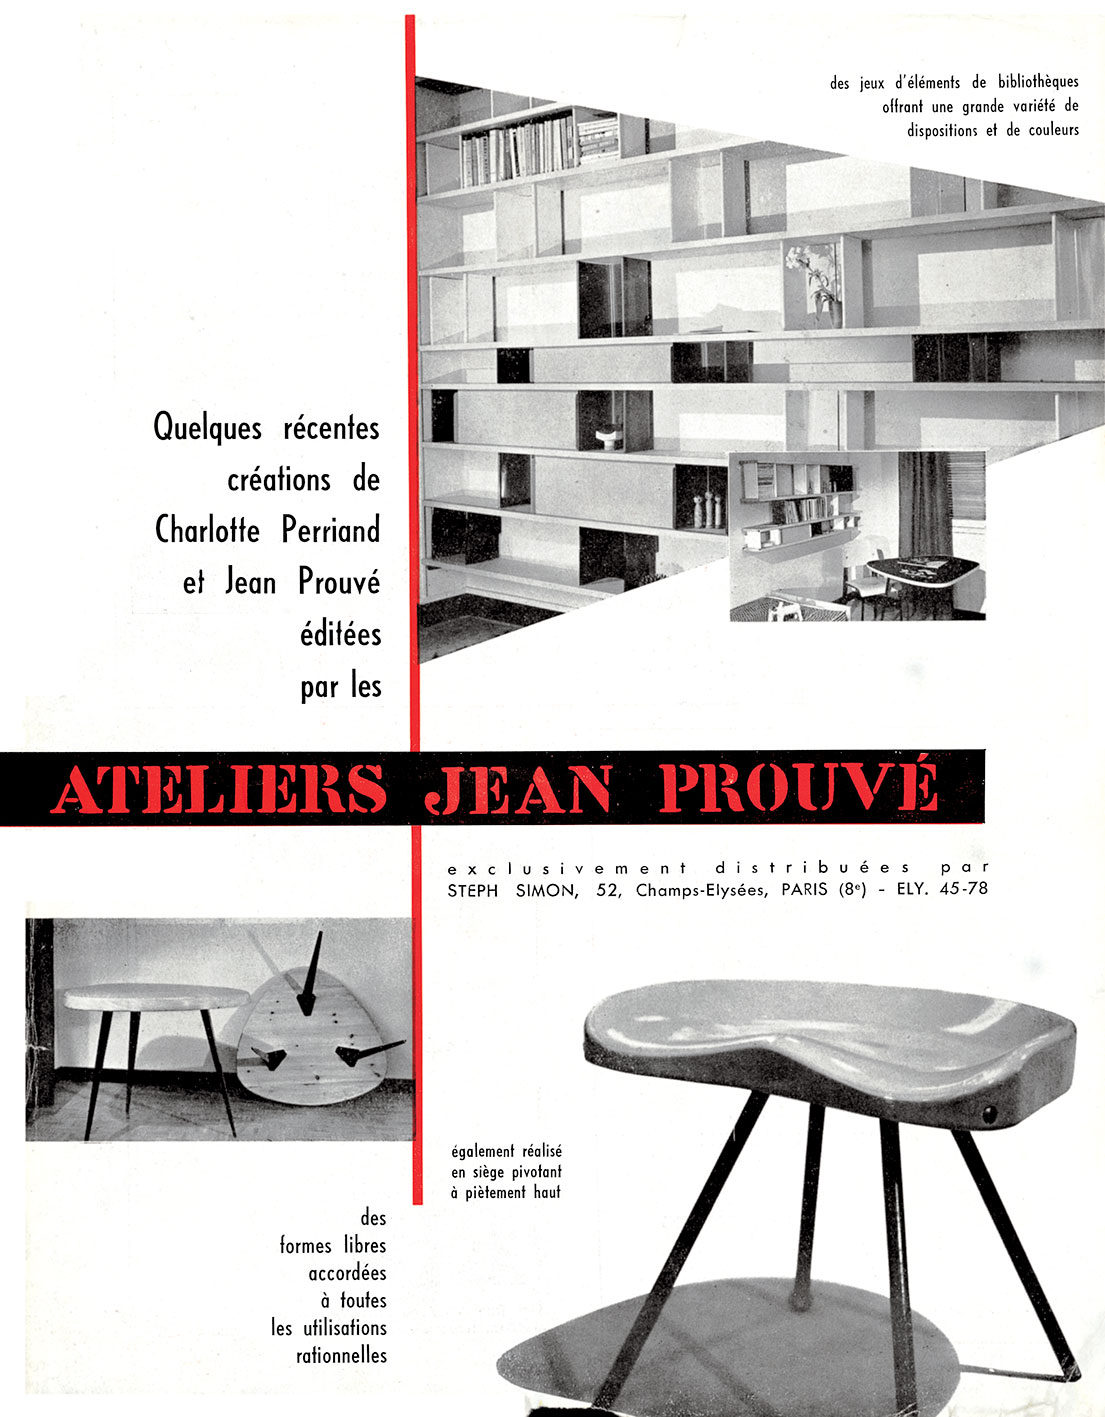 Publicité des Ateliers Jean Prouvé, <i>L’Architecture d’aujourd’hui,</i> n° 46, février 1953.